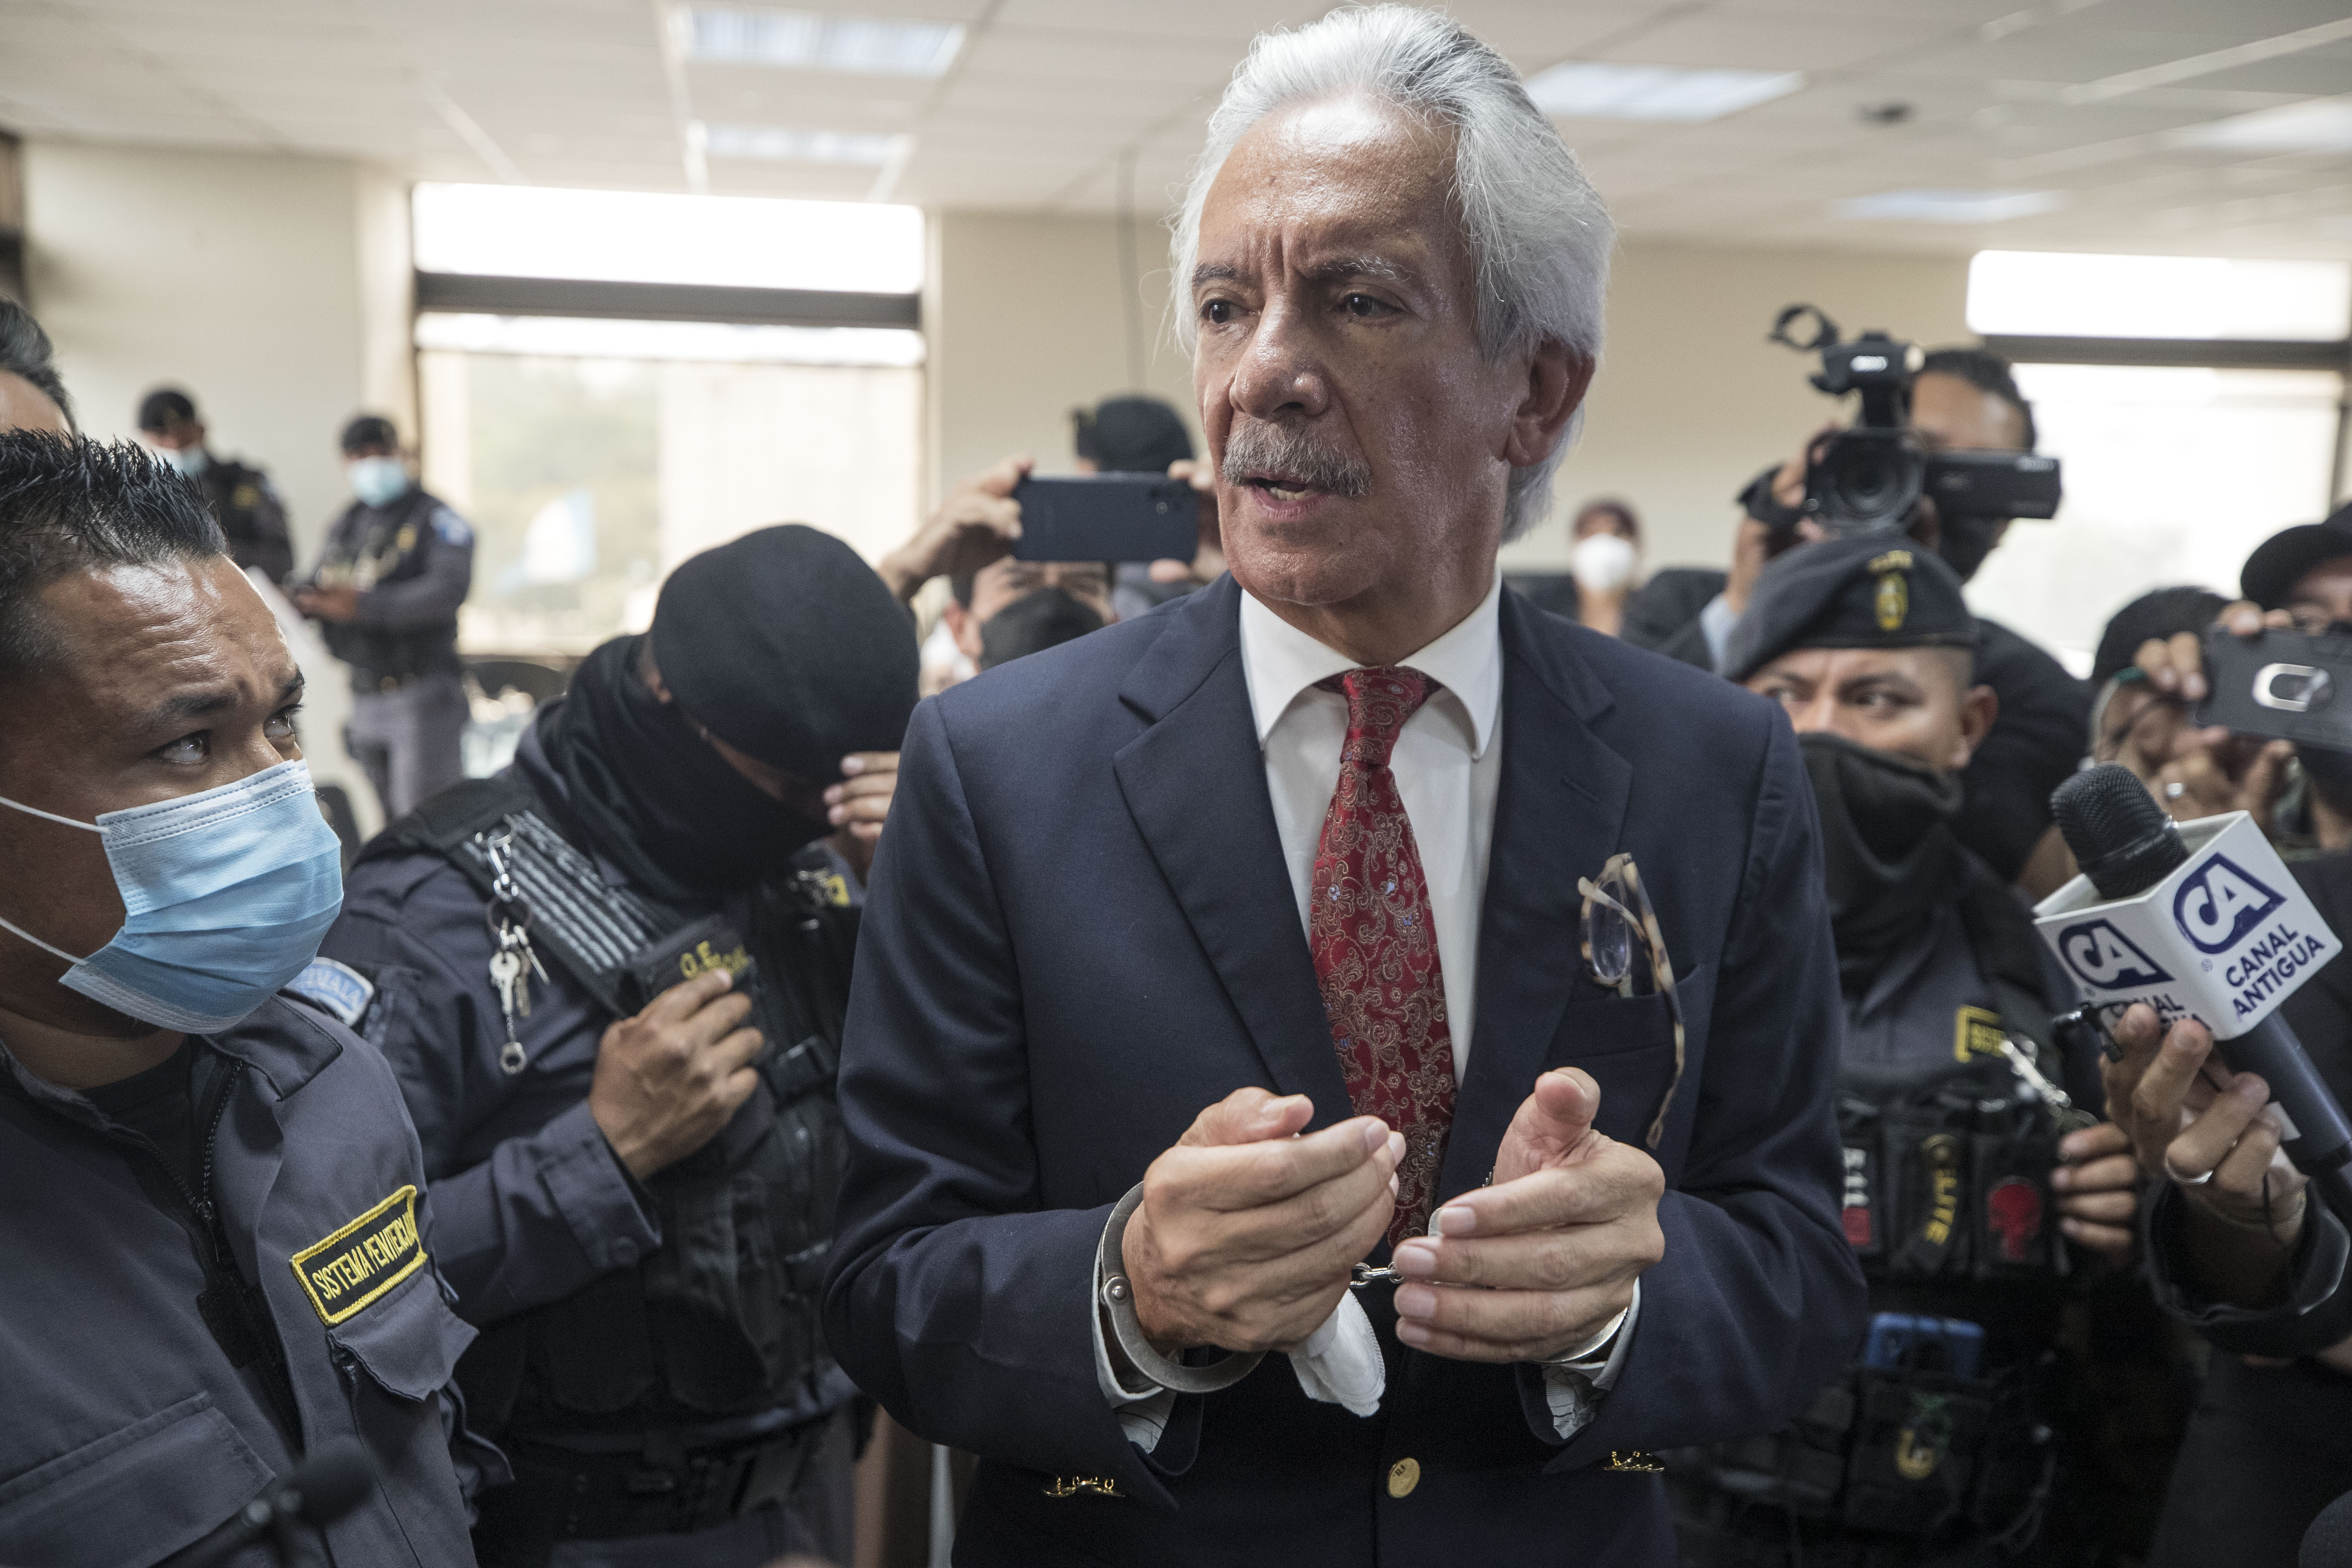 José Rubén Zamora recientemente nombrado como uno de los directores de la SIP acude a tribunales para una audiencia del proceso penal que lo mantiene detenido. Fotografía: Prensa Libre/EFE.